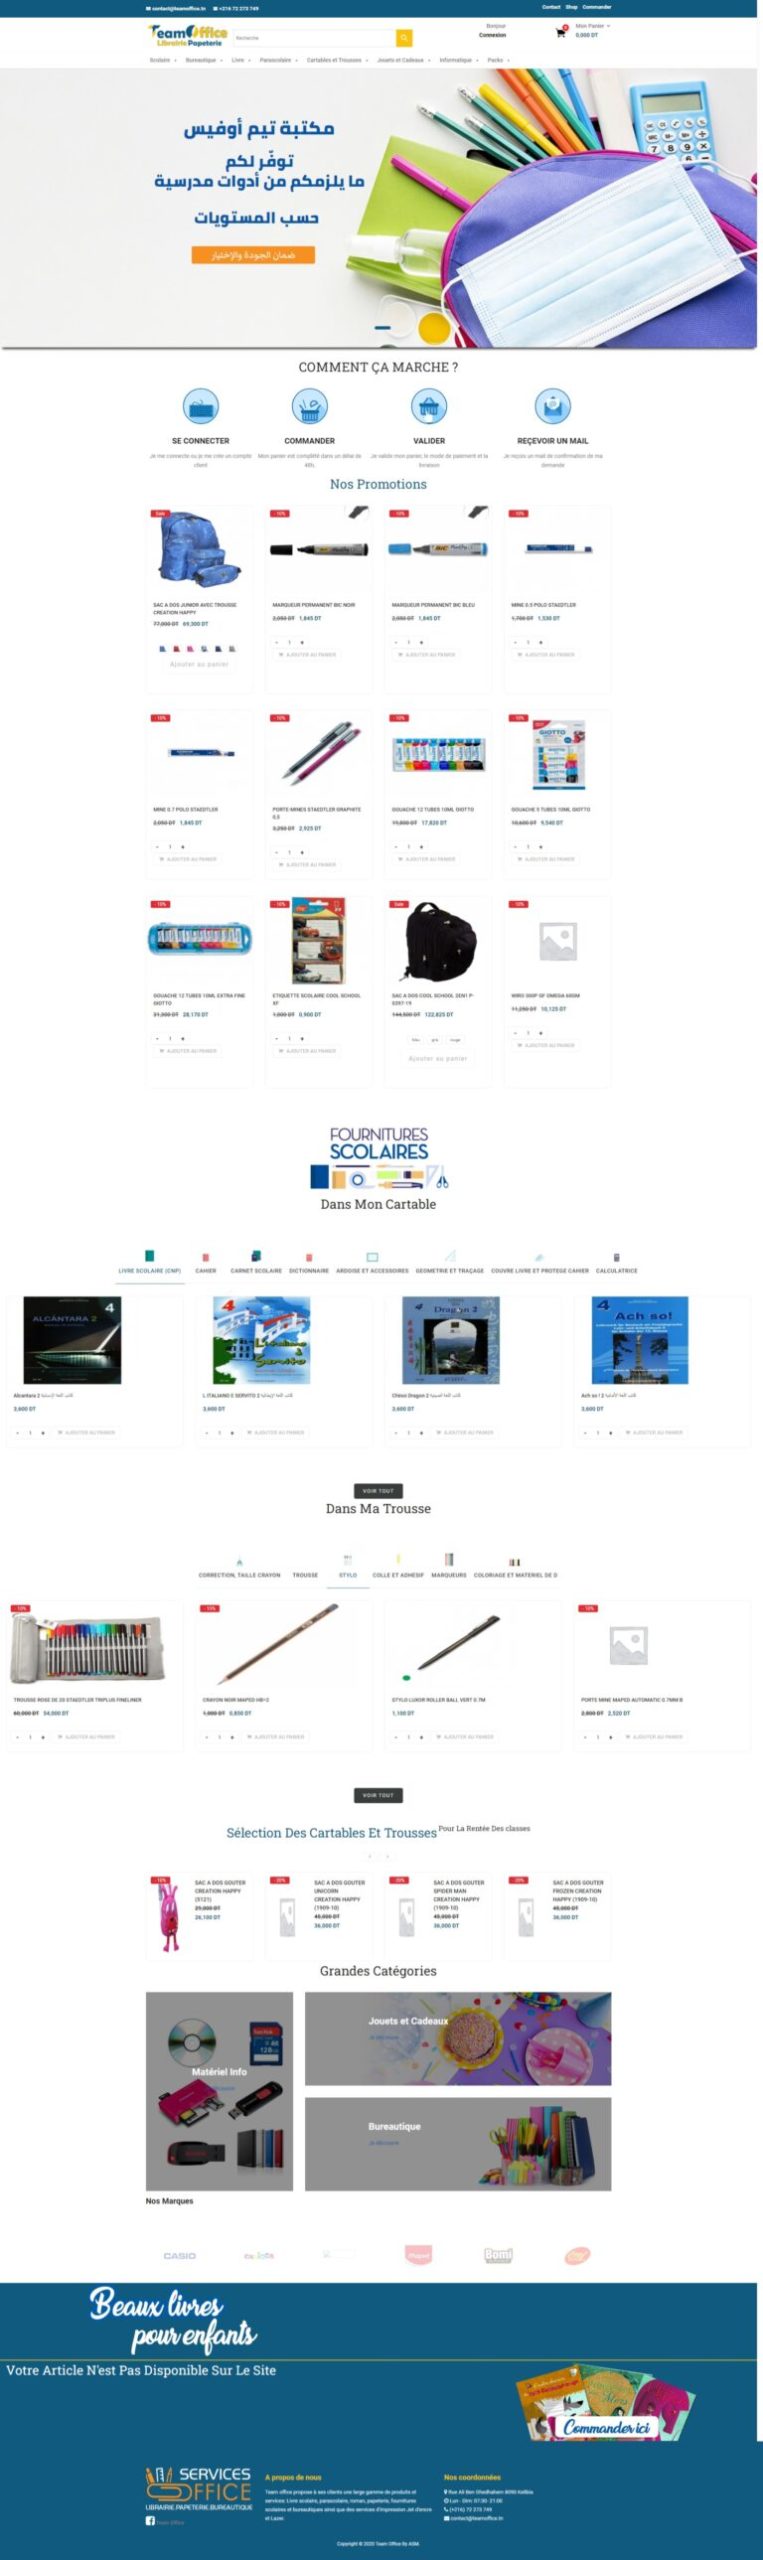 Site e-commerce